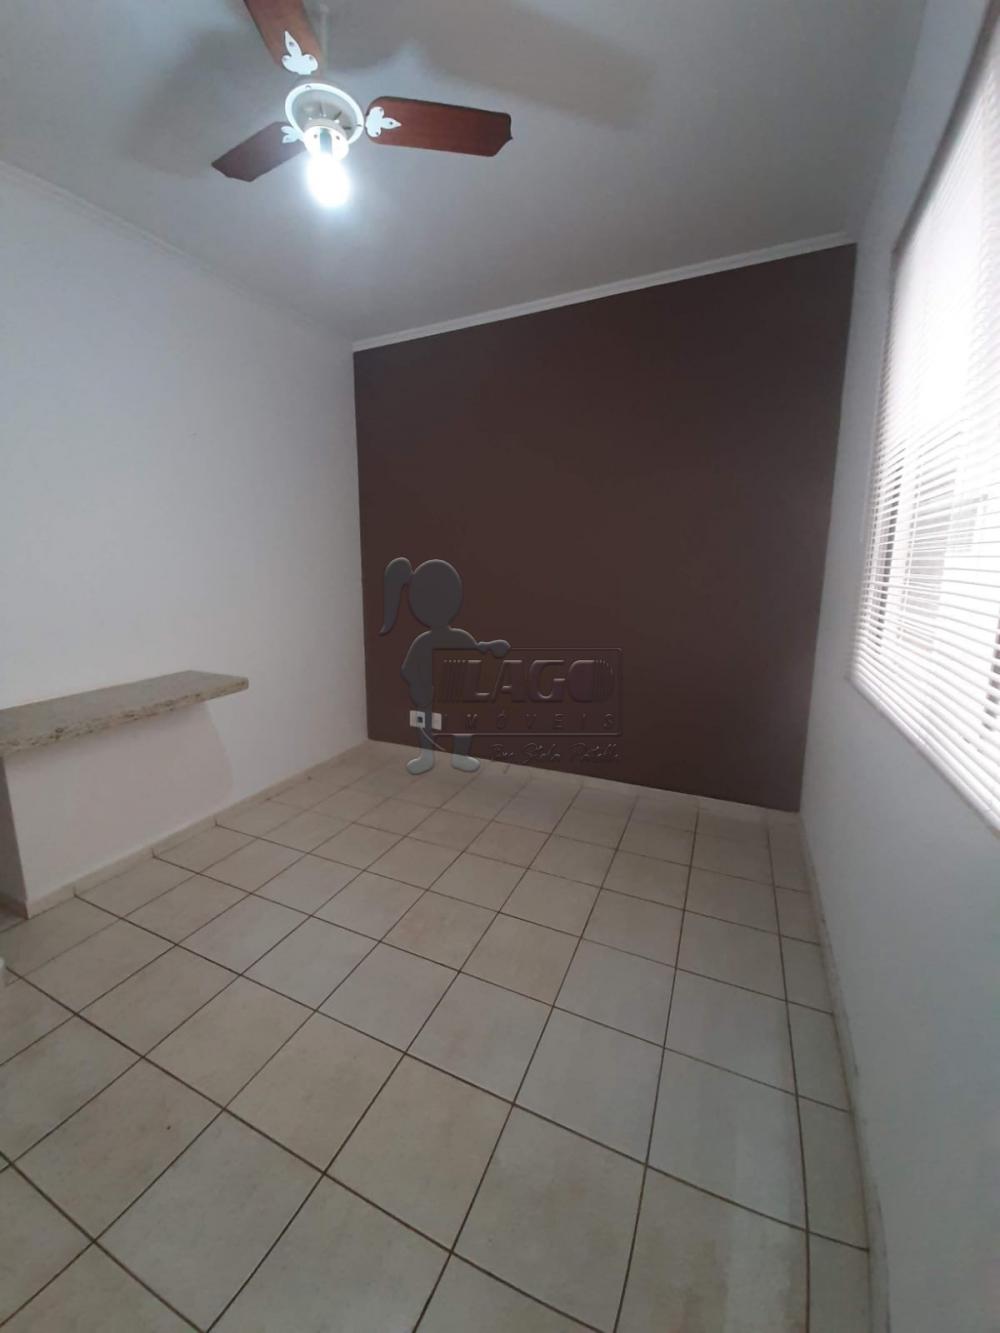 Comprar Apartamentos / Studio / Kitnet em Ribeirão Preto R$ 225.000,00 - Foto 14